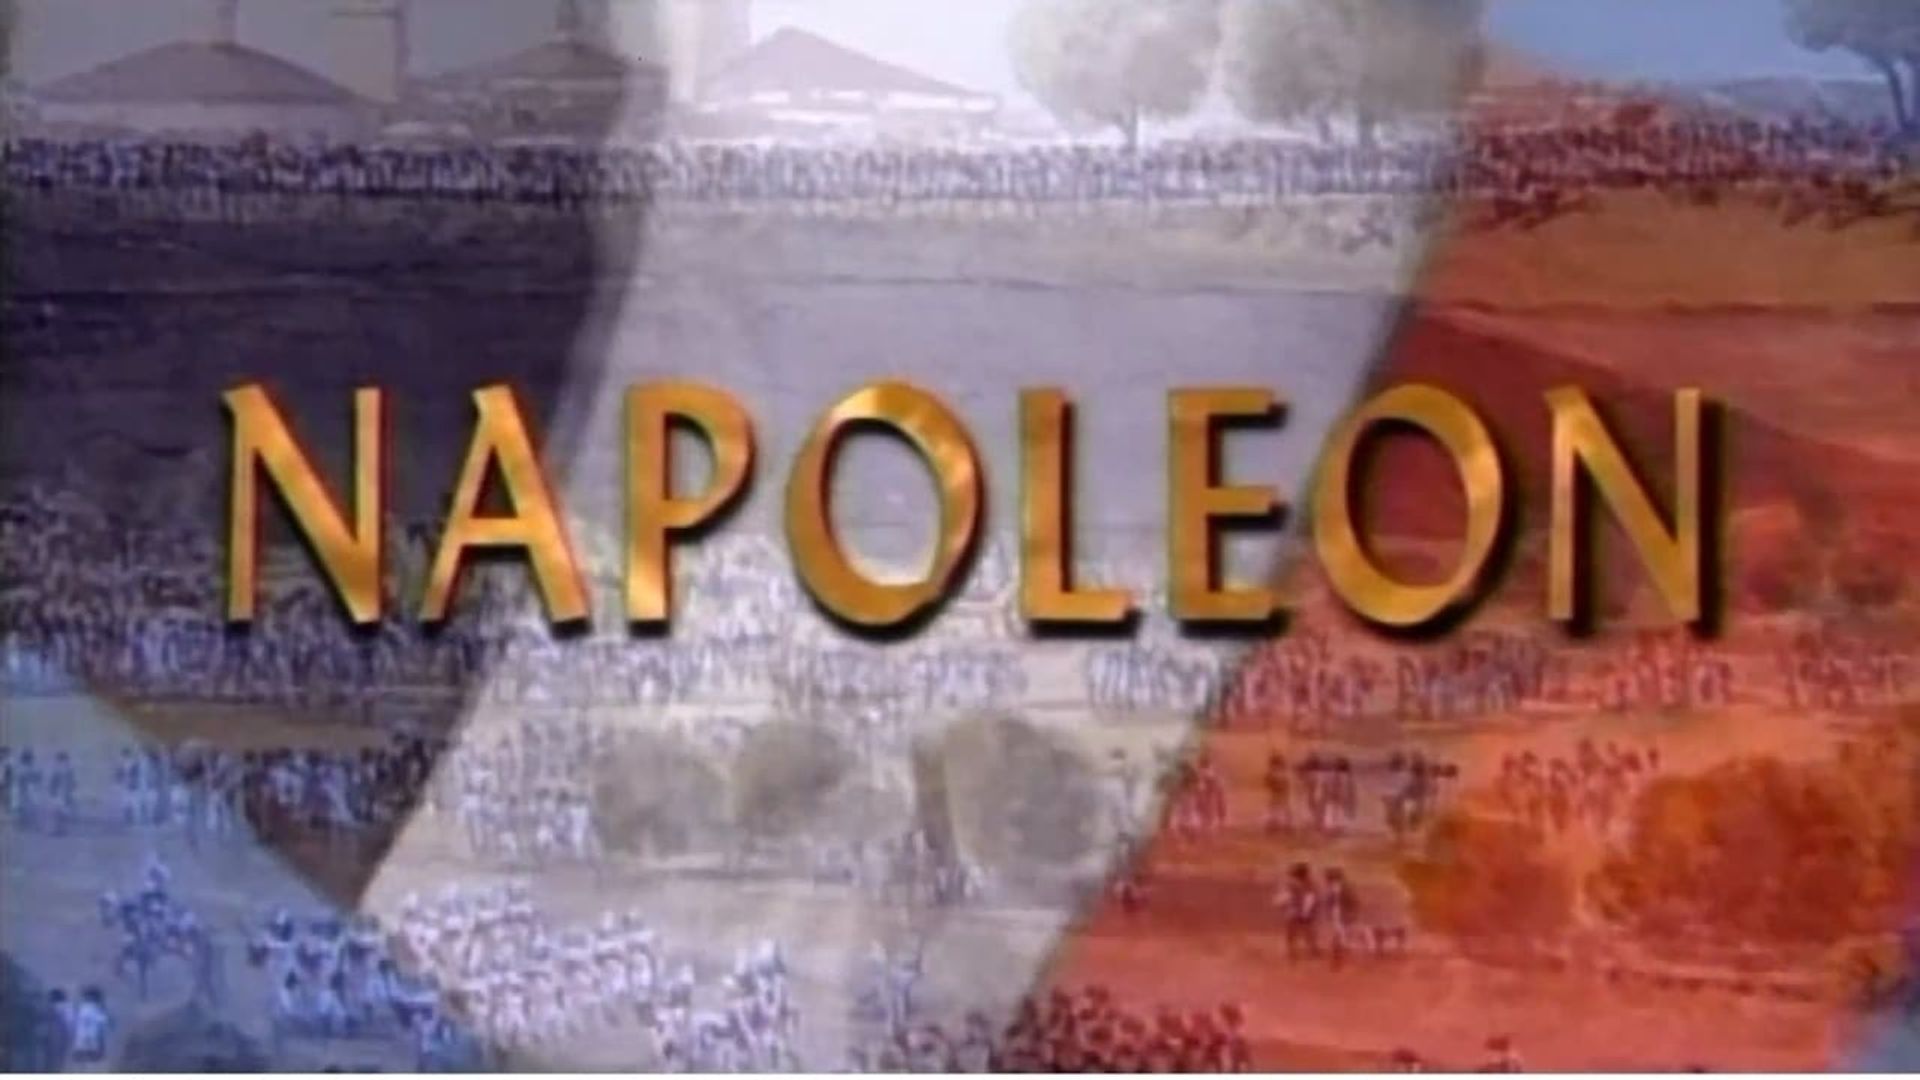 Napoleon background